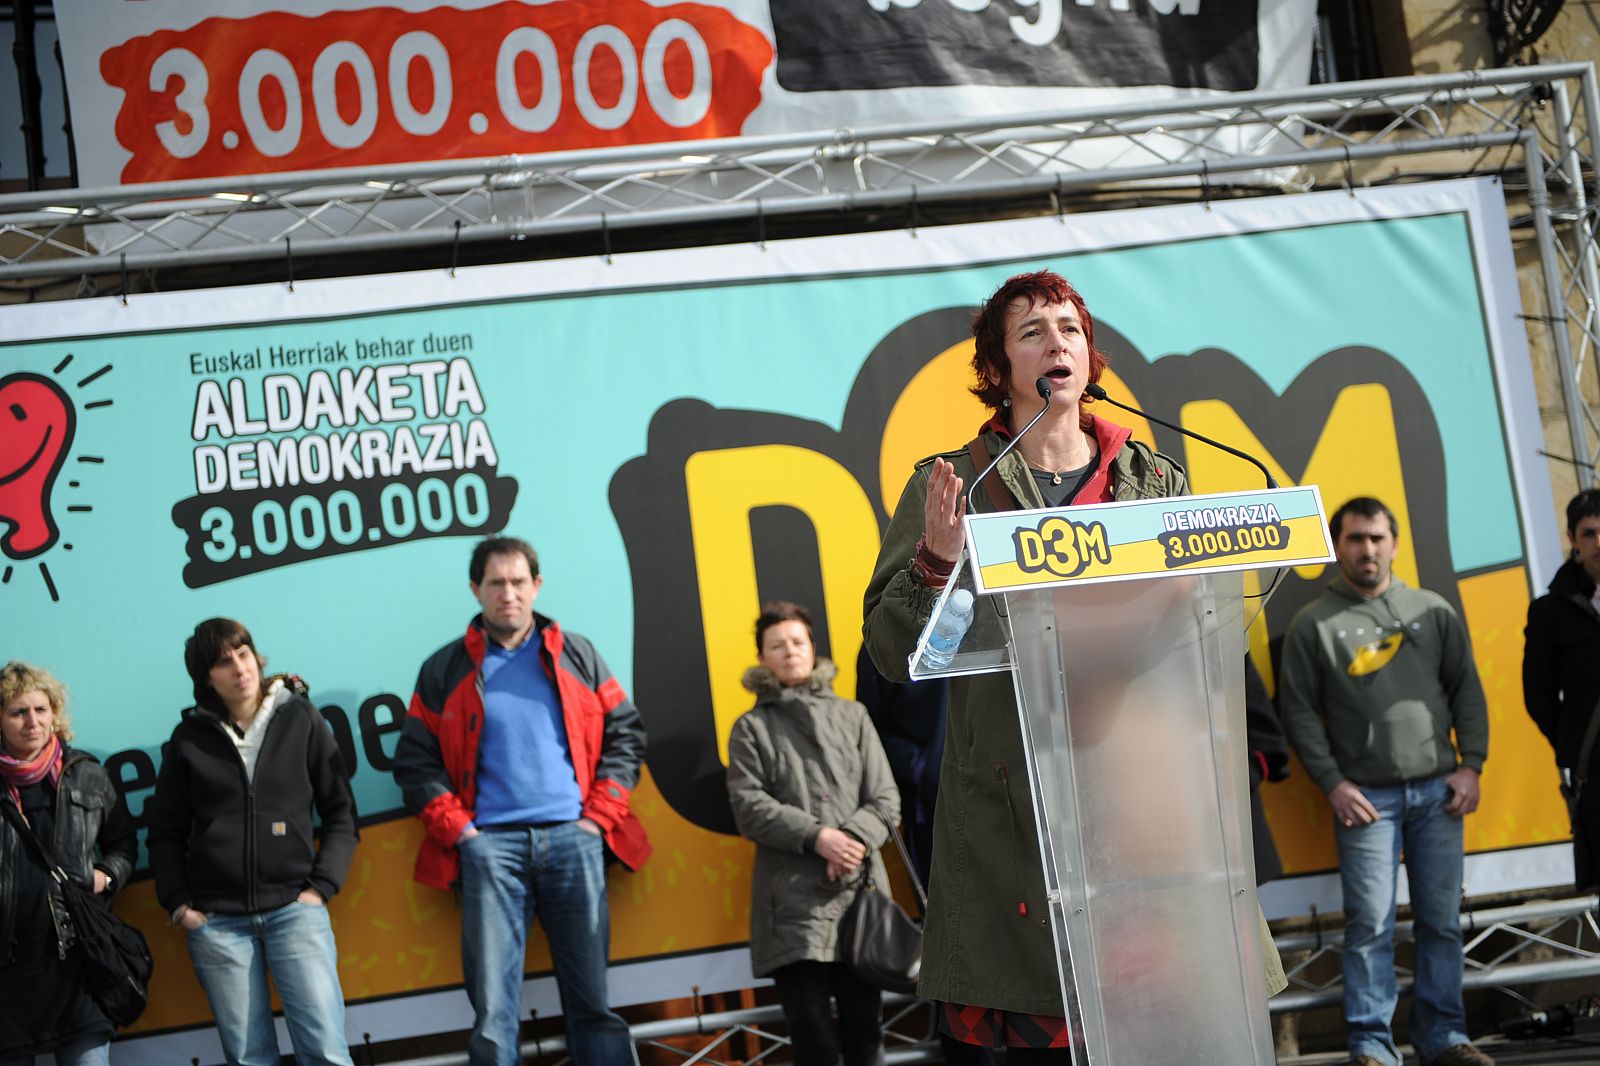 Idoia Ibero, líder en Guipuzcoa de D3M, plataforma electoral abertzale cuyas listas han sido anuladas por el Supremo.